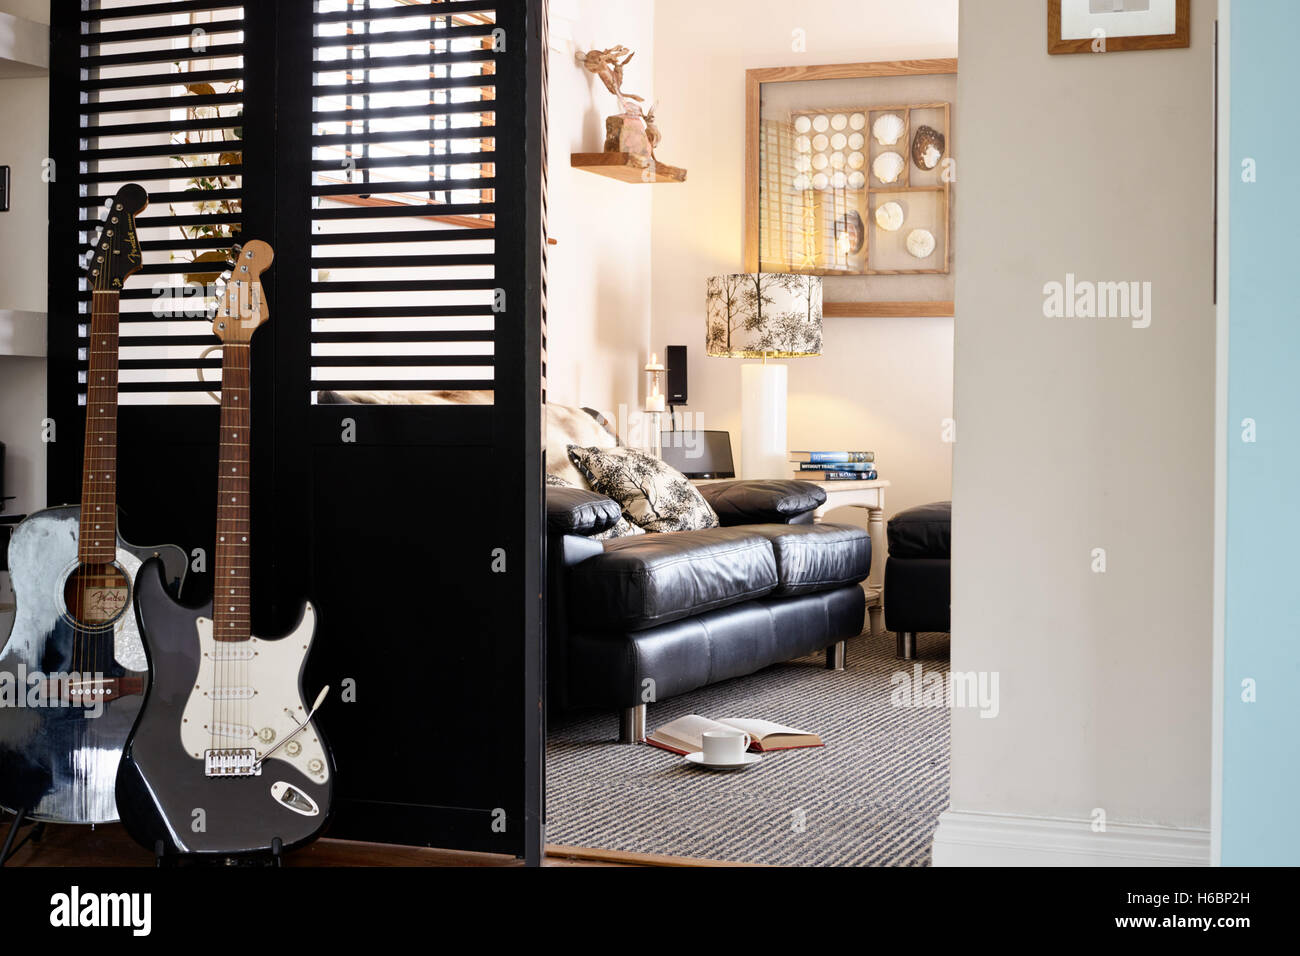 Ein Blick durch die Türen, vorbei an zwei Gitarren in einer Szene entspannt Wohnzimmer geteilt. UK Stockfoto